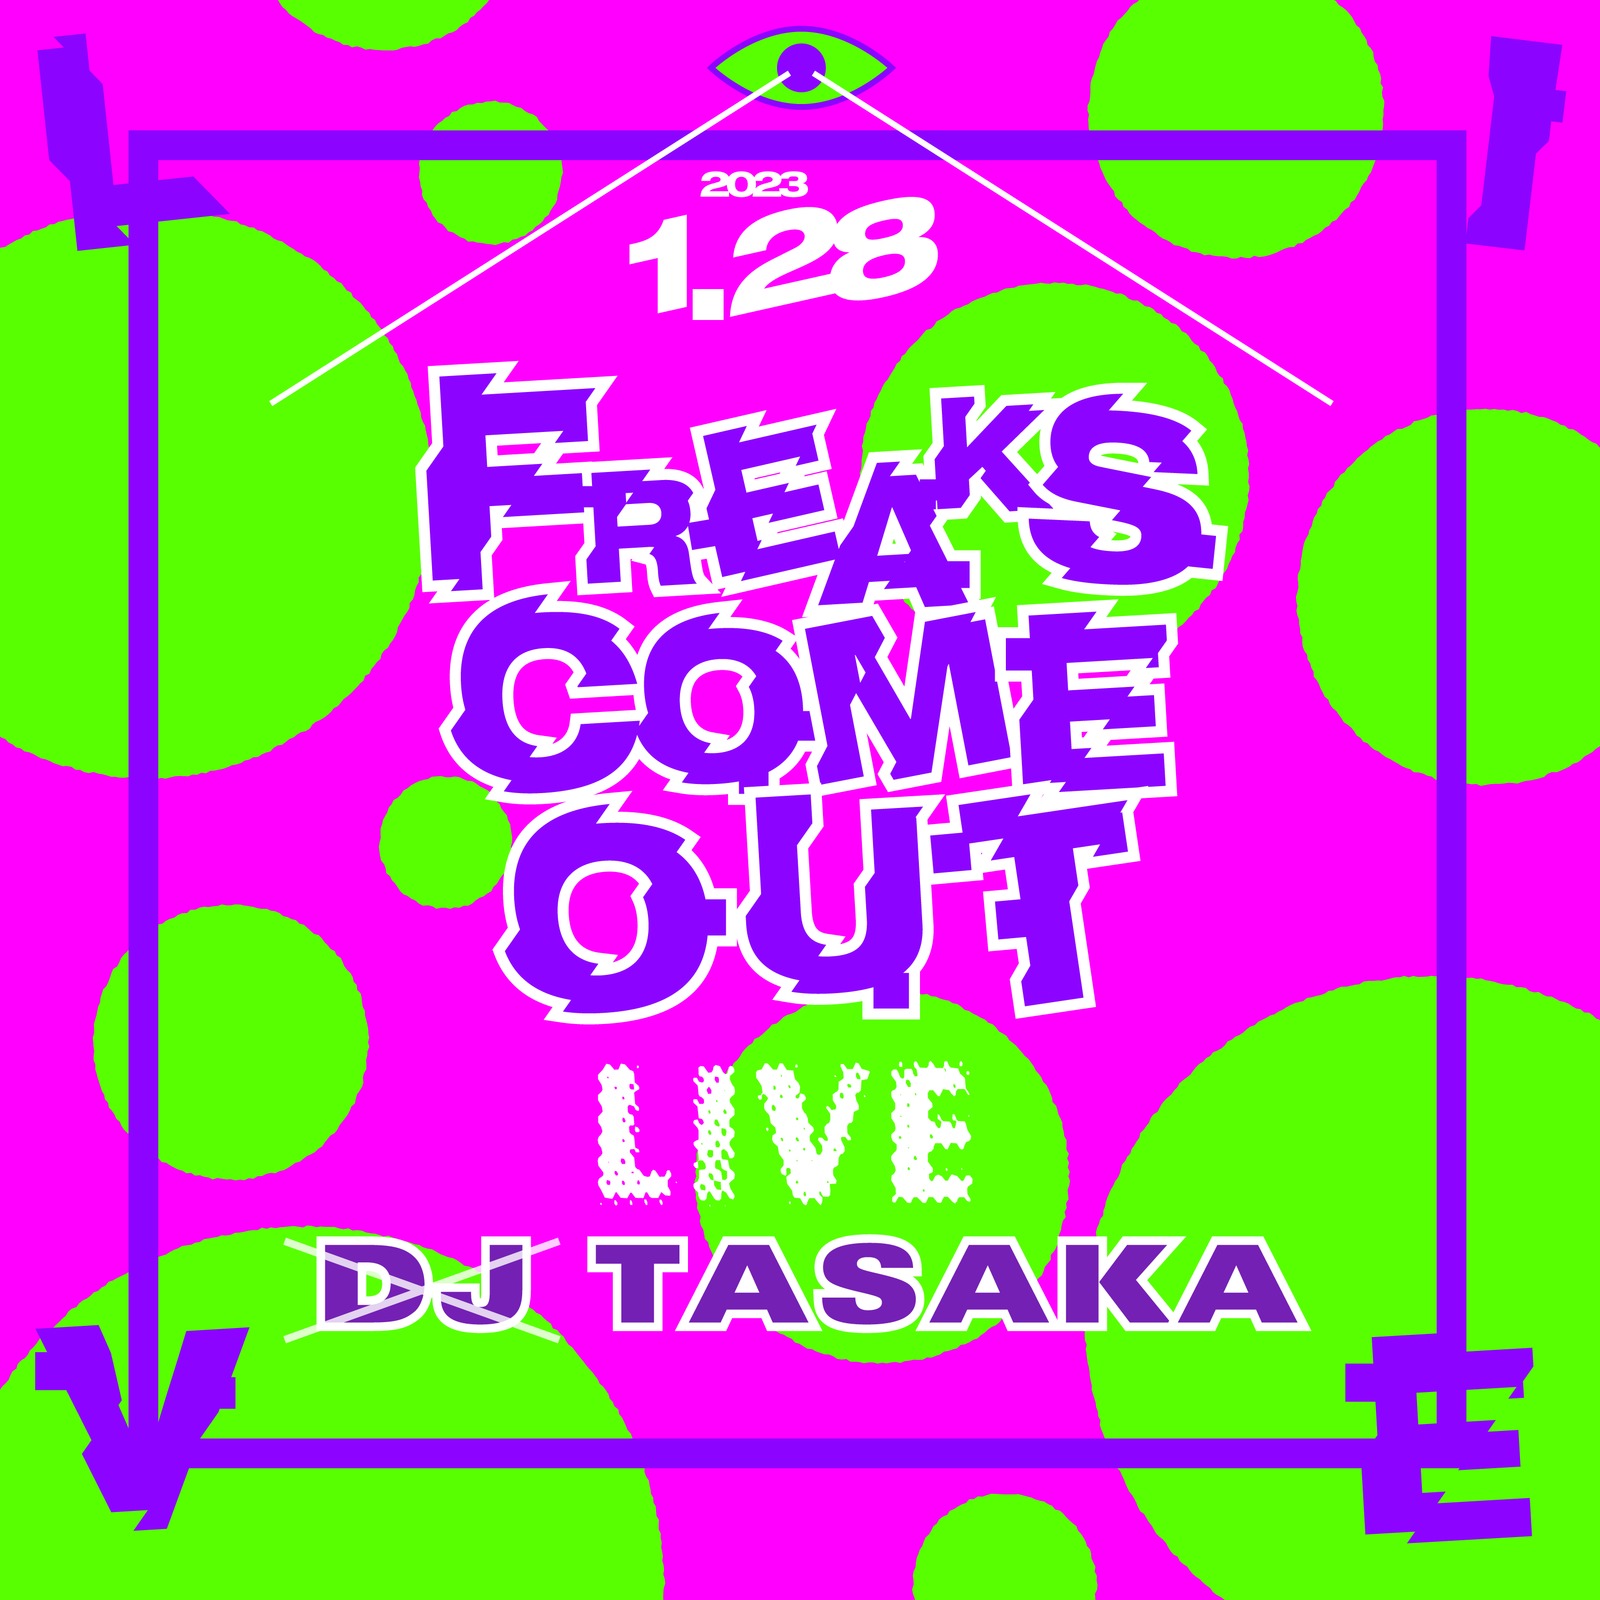 DJ TASAKA - OTOTOY